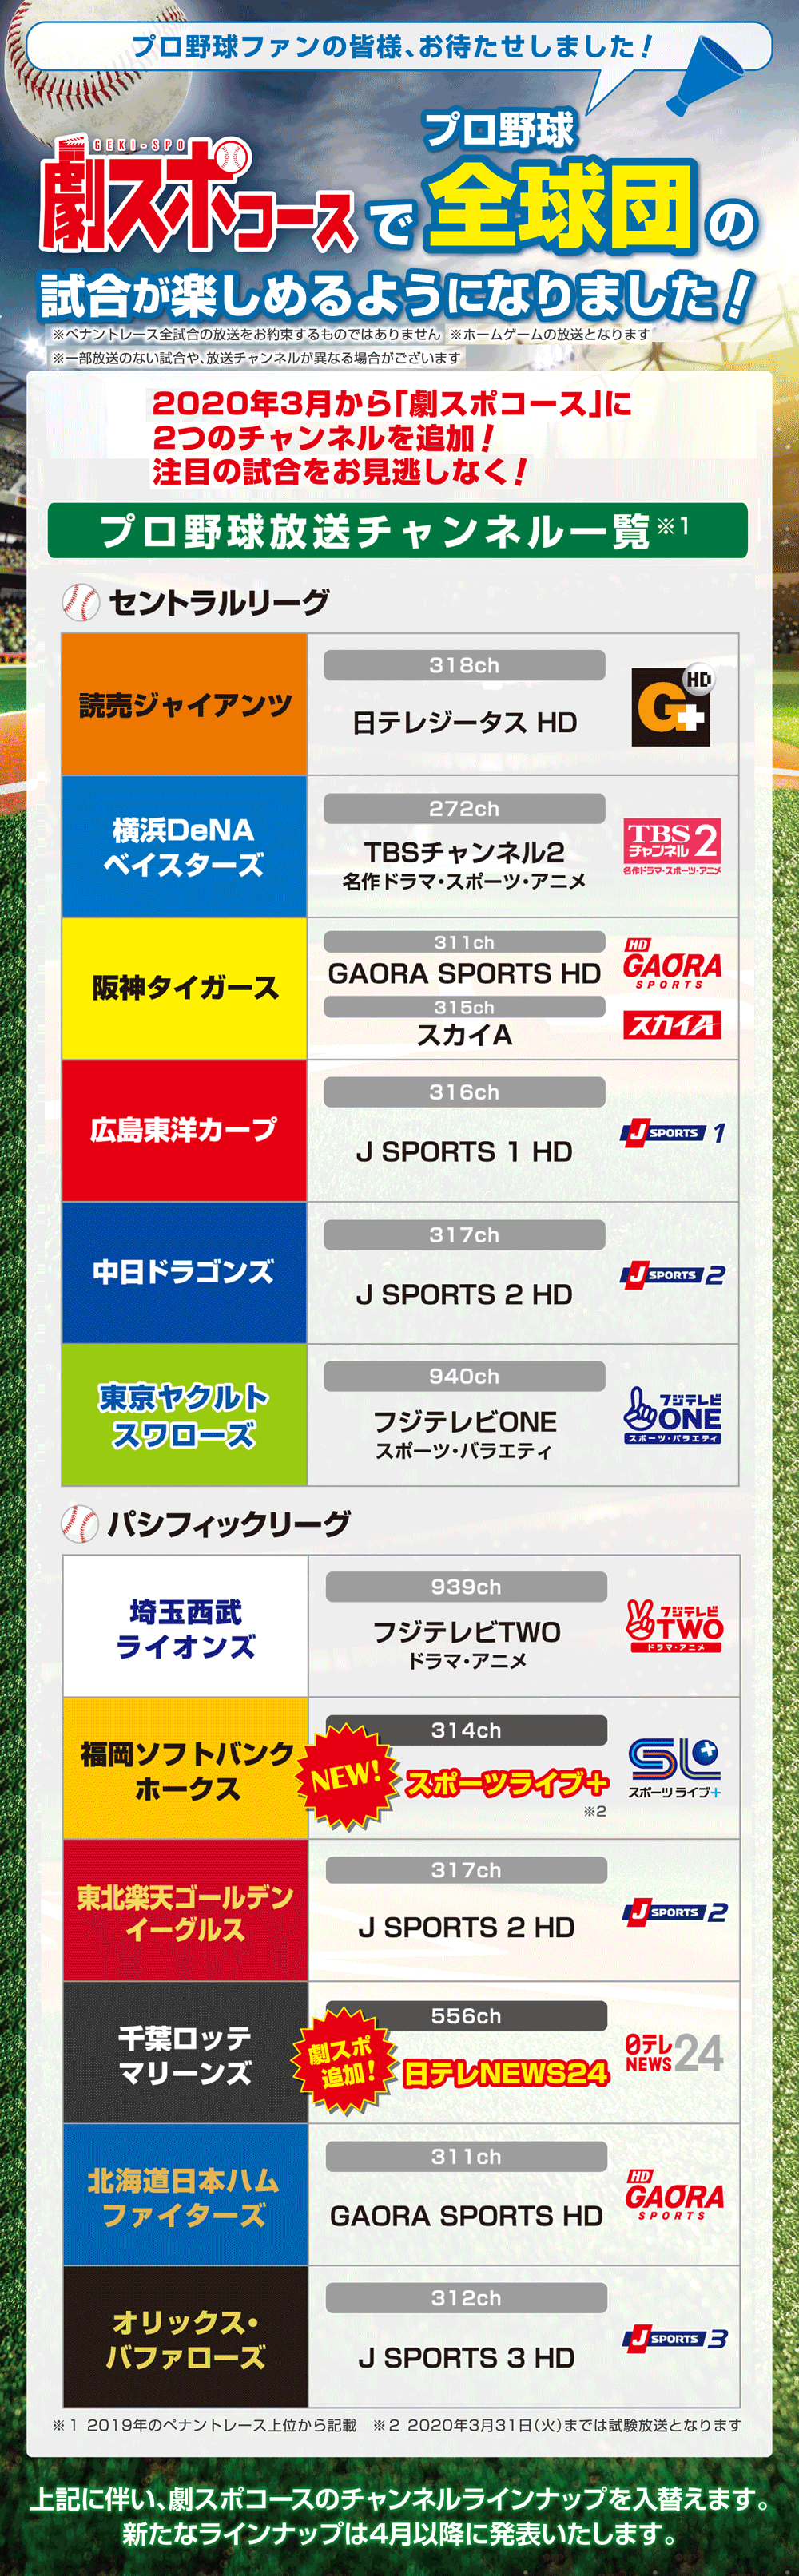 新チャンネル スポーツライブ 3 1放送開始 お知らせ Ccnet